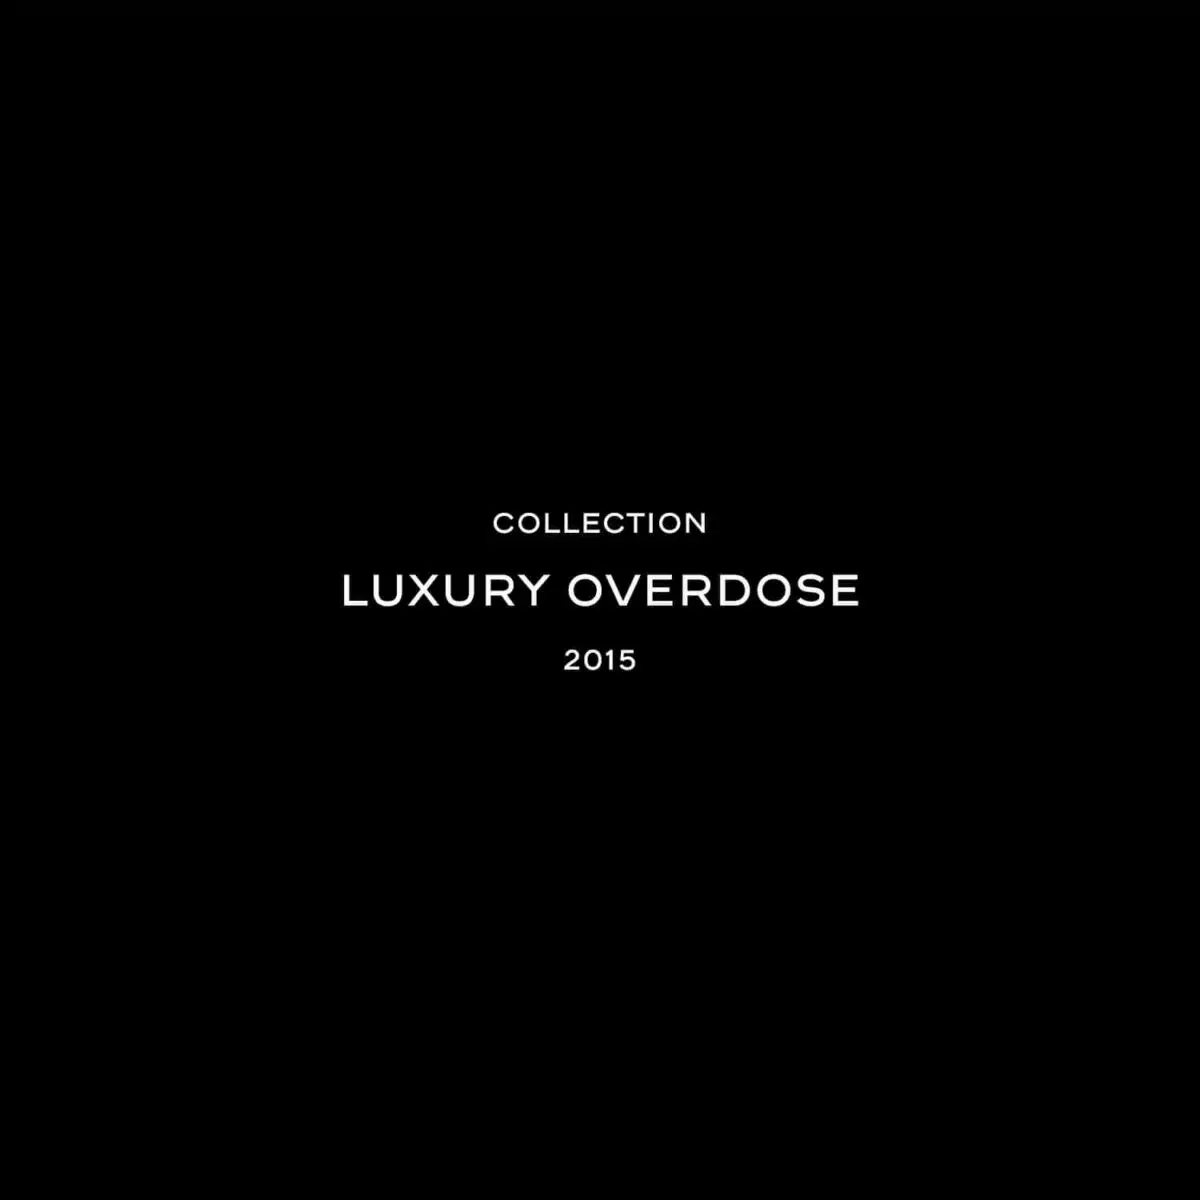 Luxury Overdose